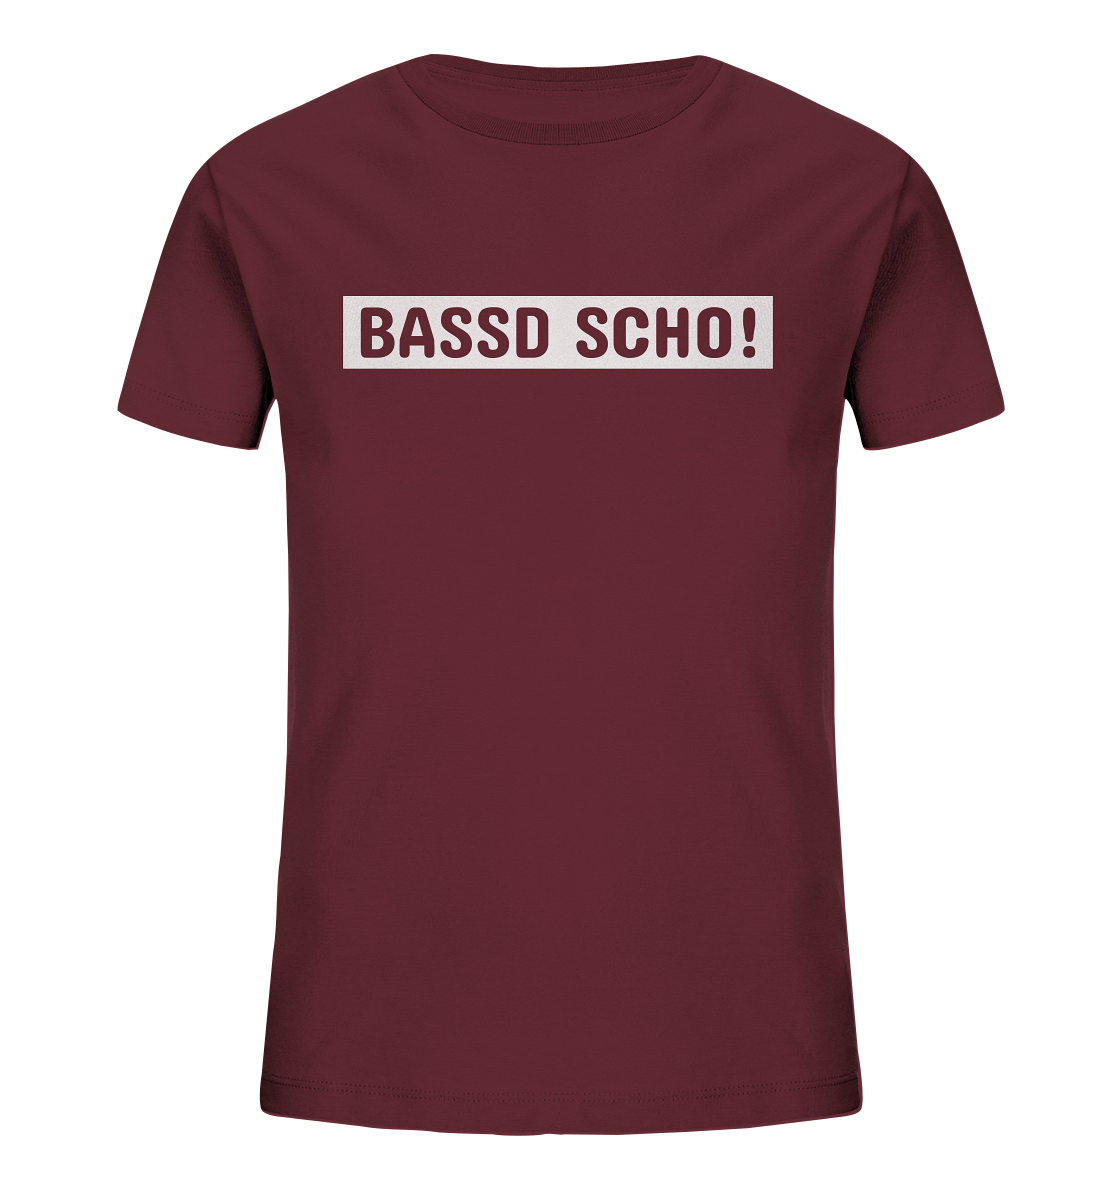 #BASSDSCHO! - Kids Organic Shirt